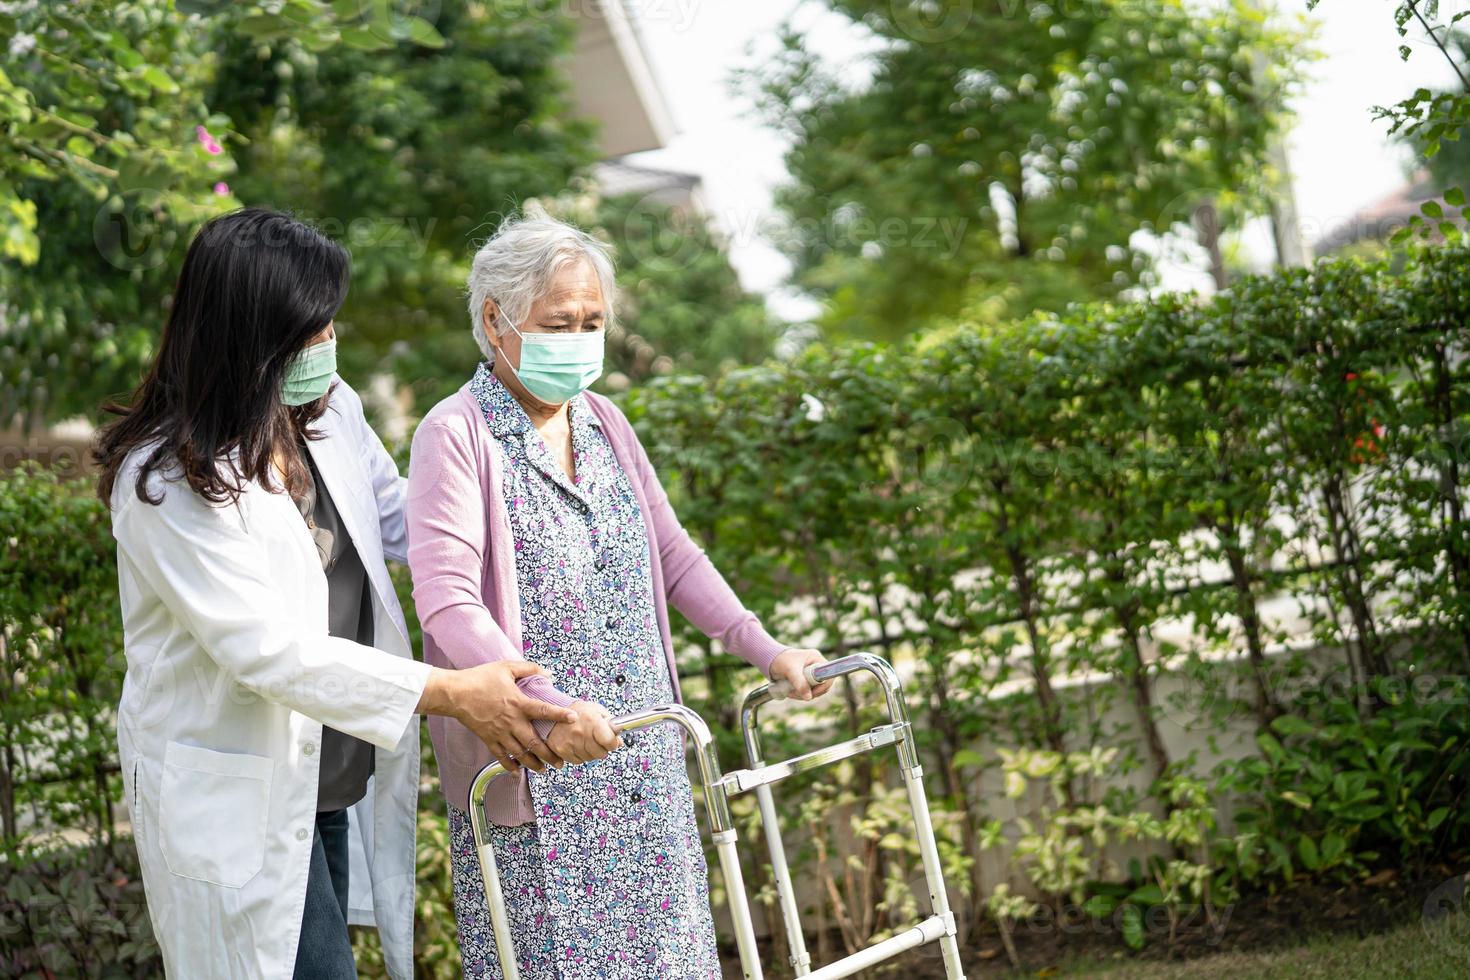 aziatische senior of oudere oude dame vrouw loopt met rollator en draagt een gezichtsmasker ter bescherming van de veiligheidsinfectie covid-19 coronavirus. foto